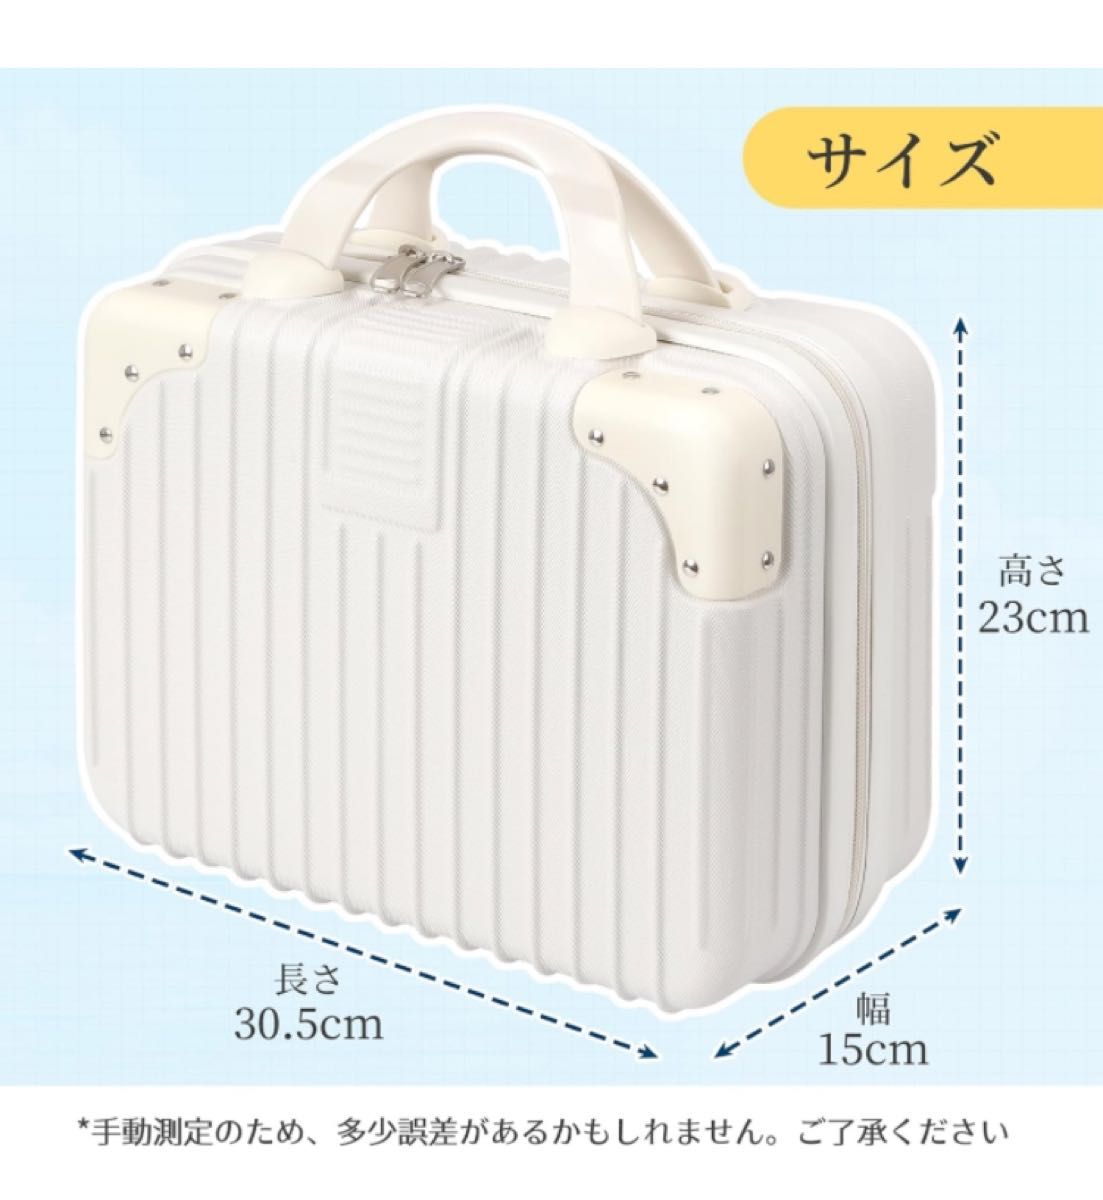 ミニスーツケース 化粧箱 スーツケース ハンドバッグ 機内持込 携帯 小格納 超軽量  (ホワイト 30.5×23×15cm)